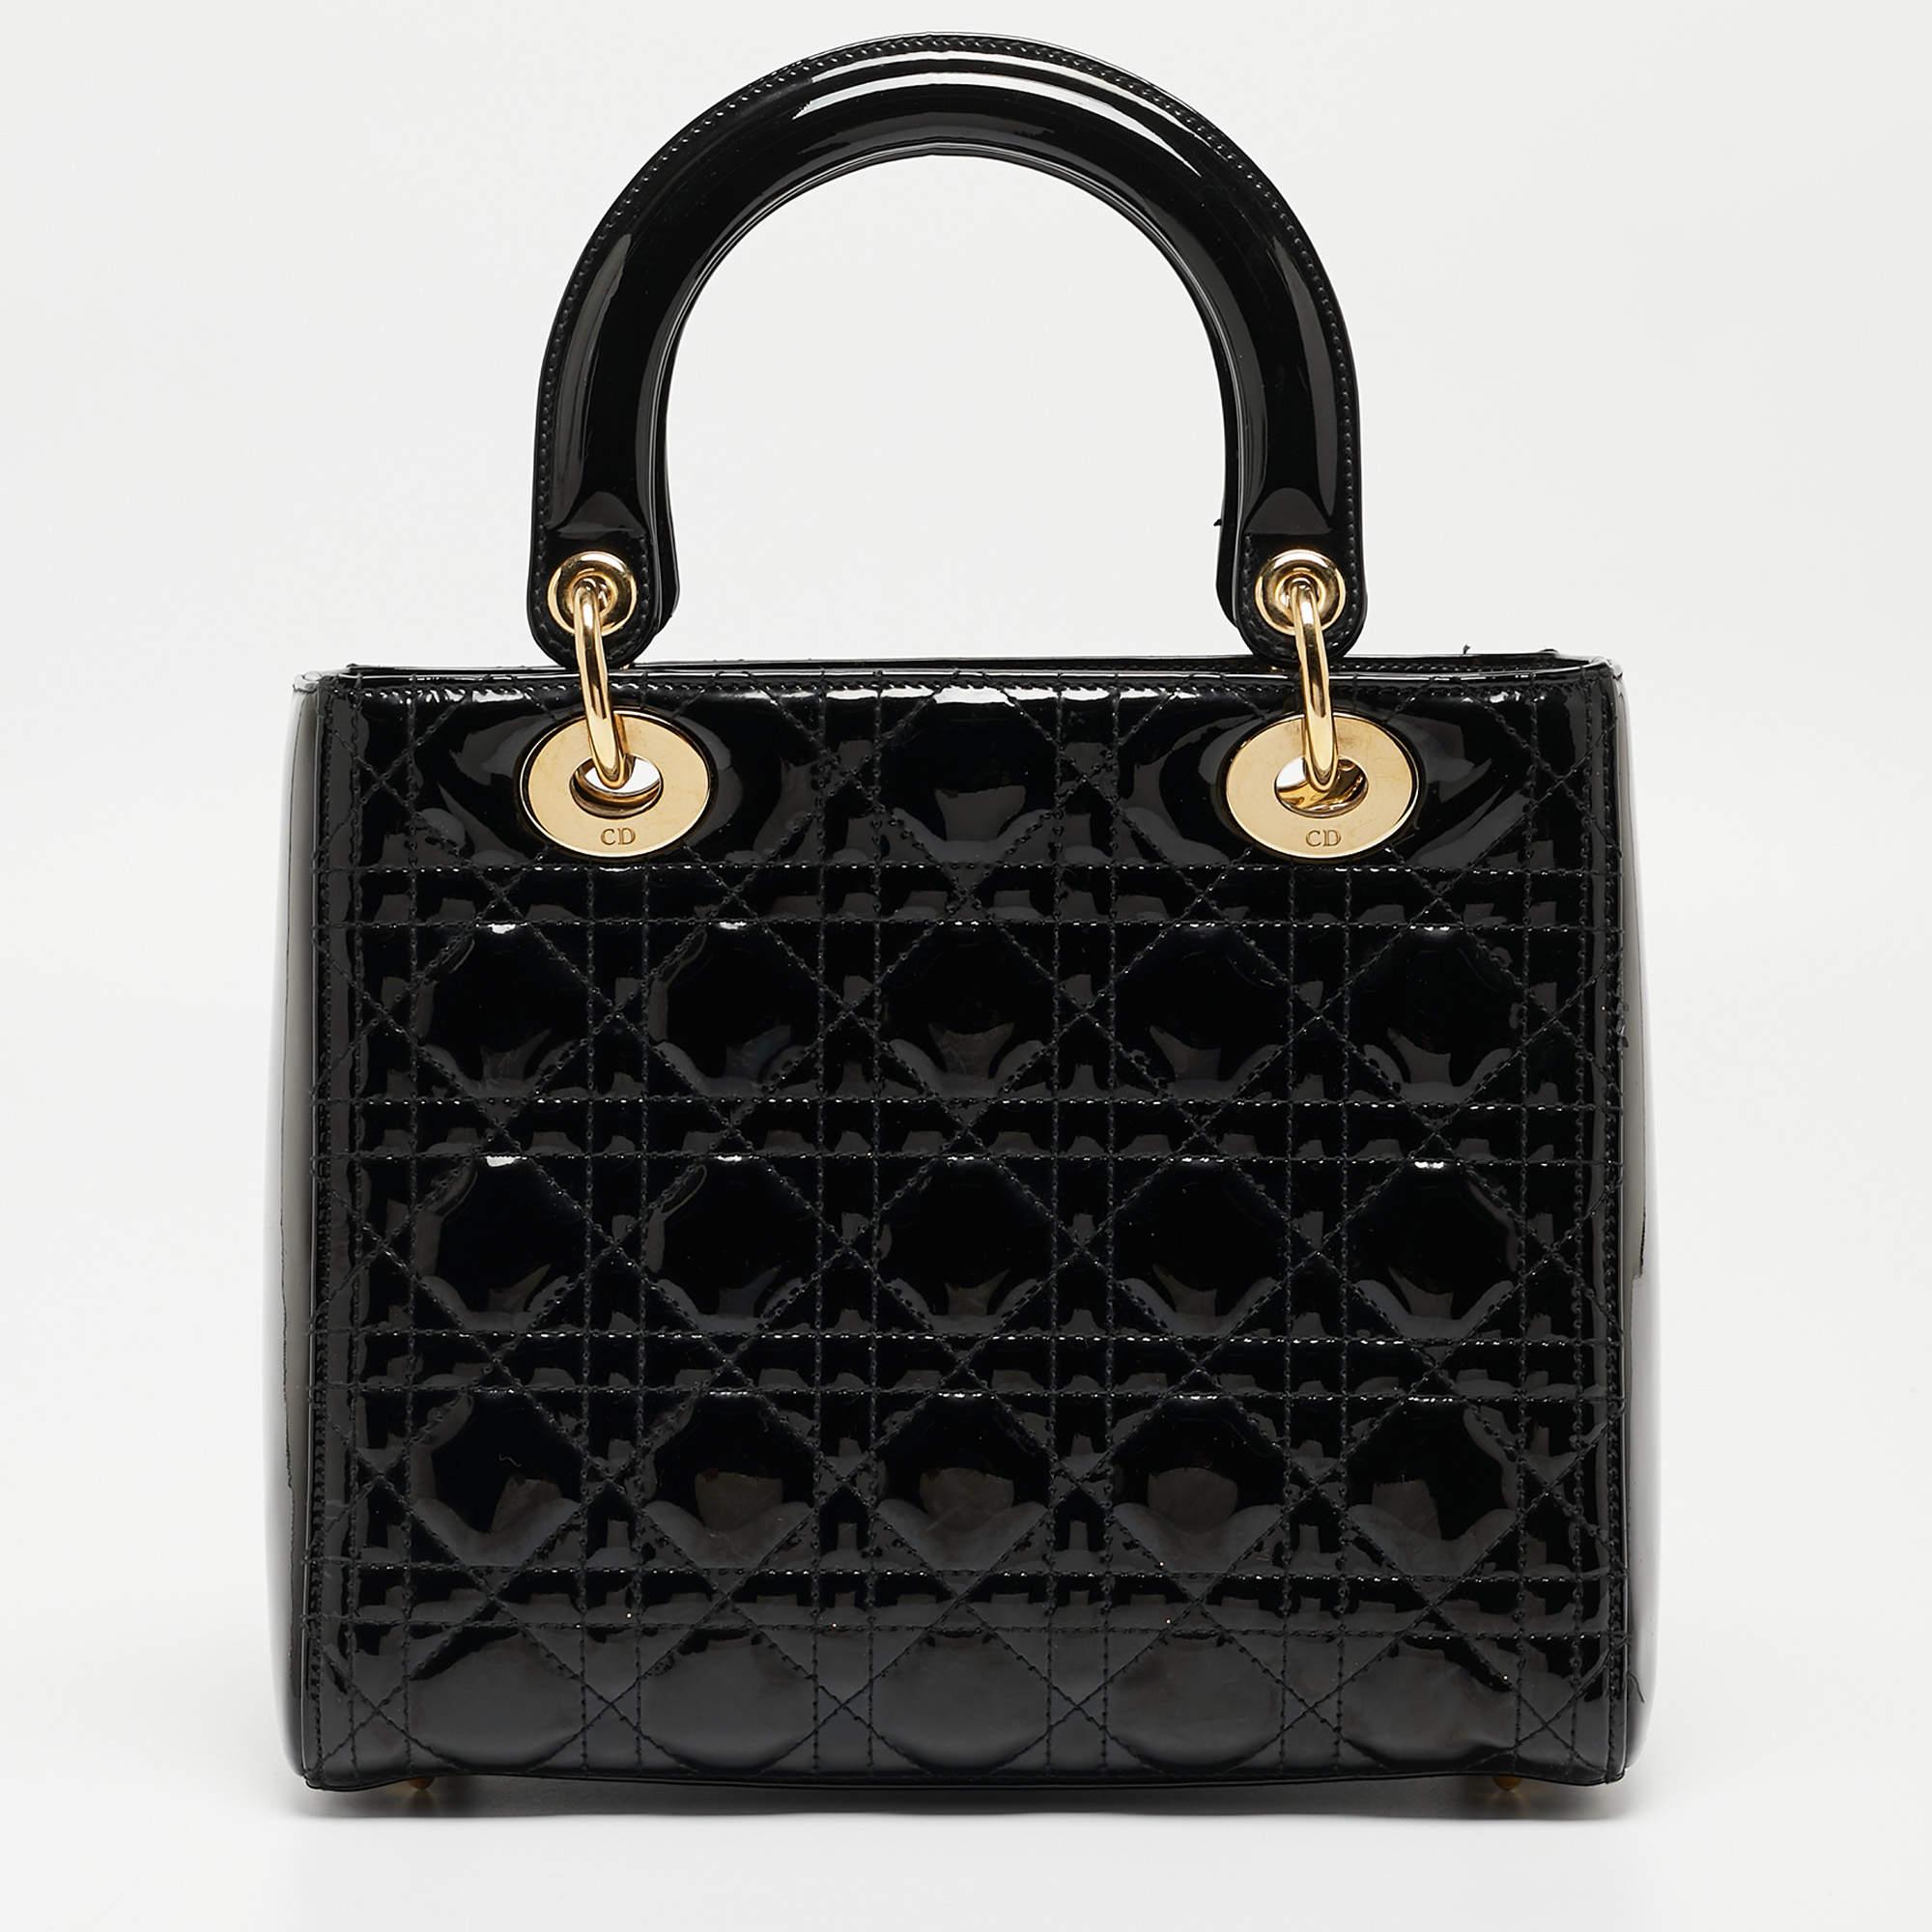 Ein zeitloser Status und ein großartiges Design kennzeichnen die Lady Dior-Tasche. Es ist eine ikonische Tasche, in die die Menschen bis heute investieren. Wir haben hier diese klassische Schönheit aus schwarzem Cannage-Lackleder. Die Tasche hat